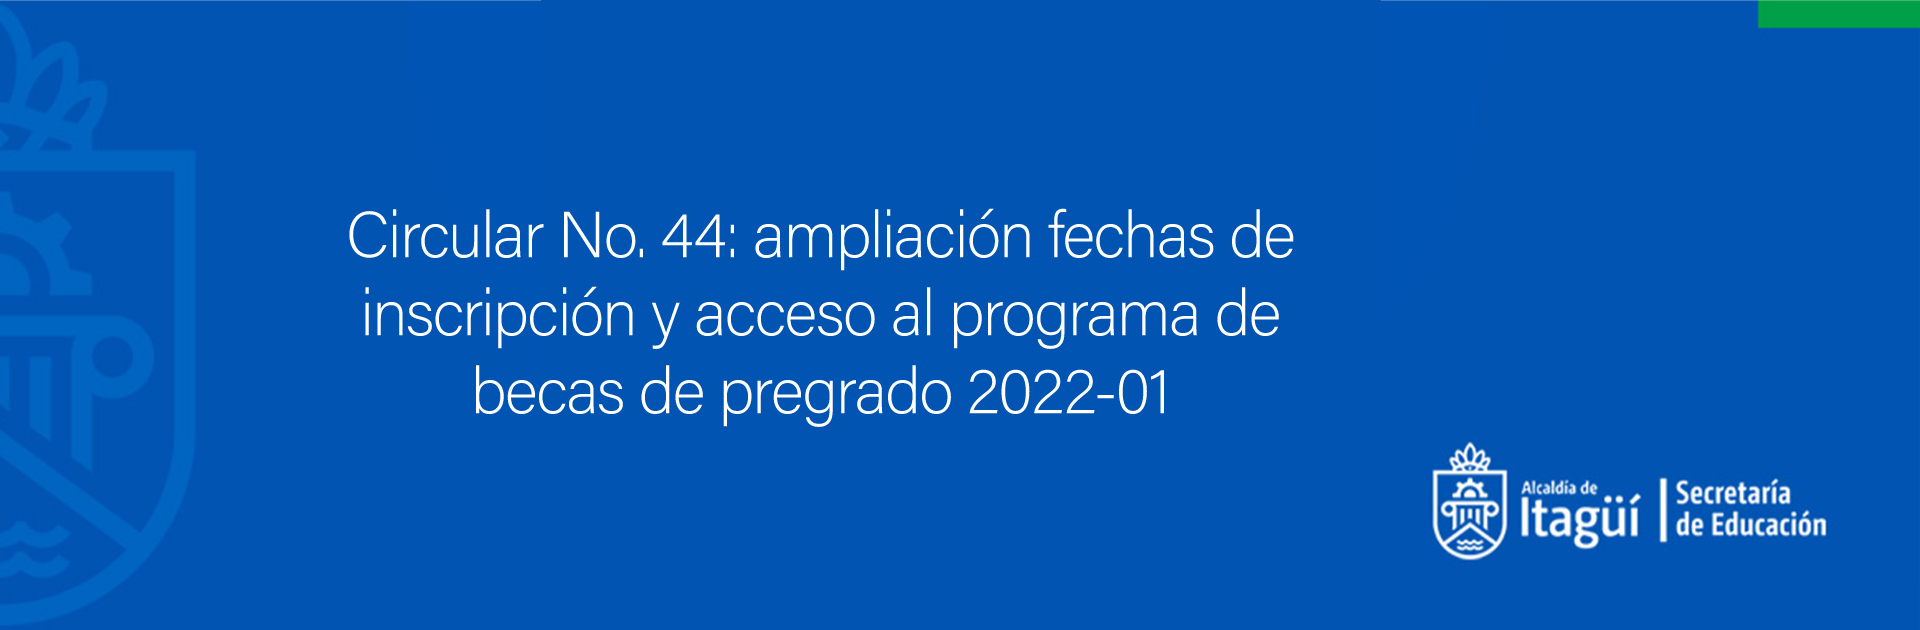 Circular No. 44: ampliación fechas de inscripción y acceso al programa de becas de pregrado 2022-01